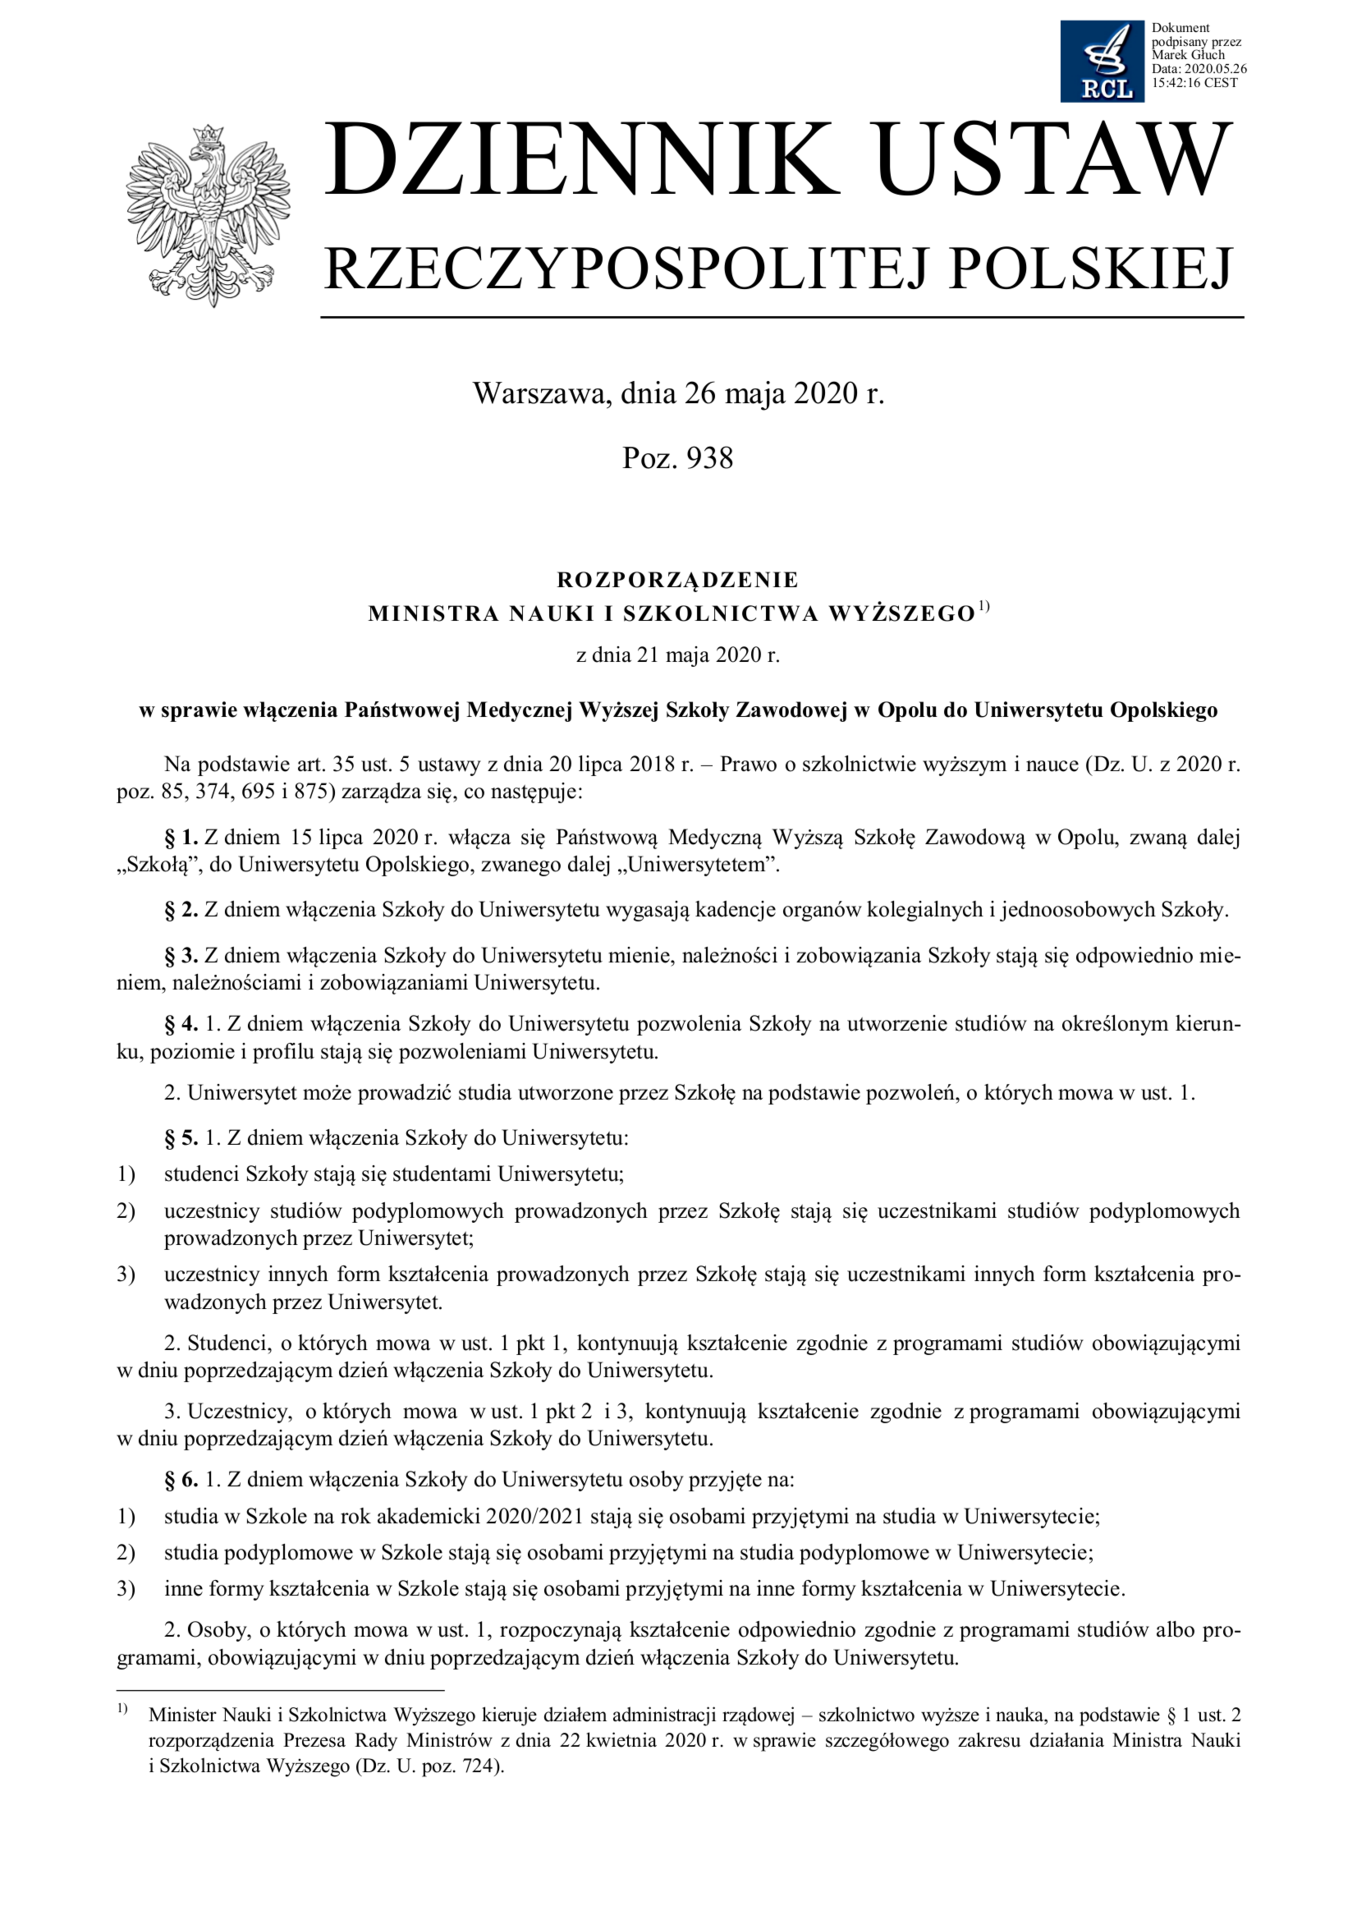 Rozporządzenie Ministra Nauki i Szkolnictwa Wyższego z dnia 21 maja 2020 r. w sprawie włączenia PMWSZ w Opolu do Uniwersytetu Opolskiego